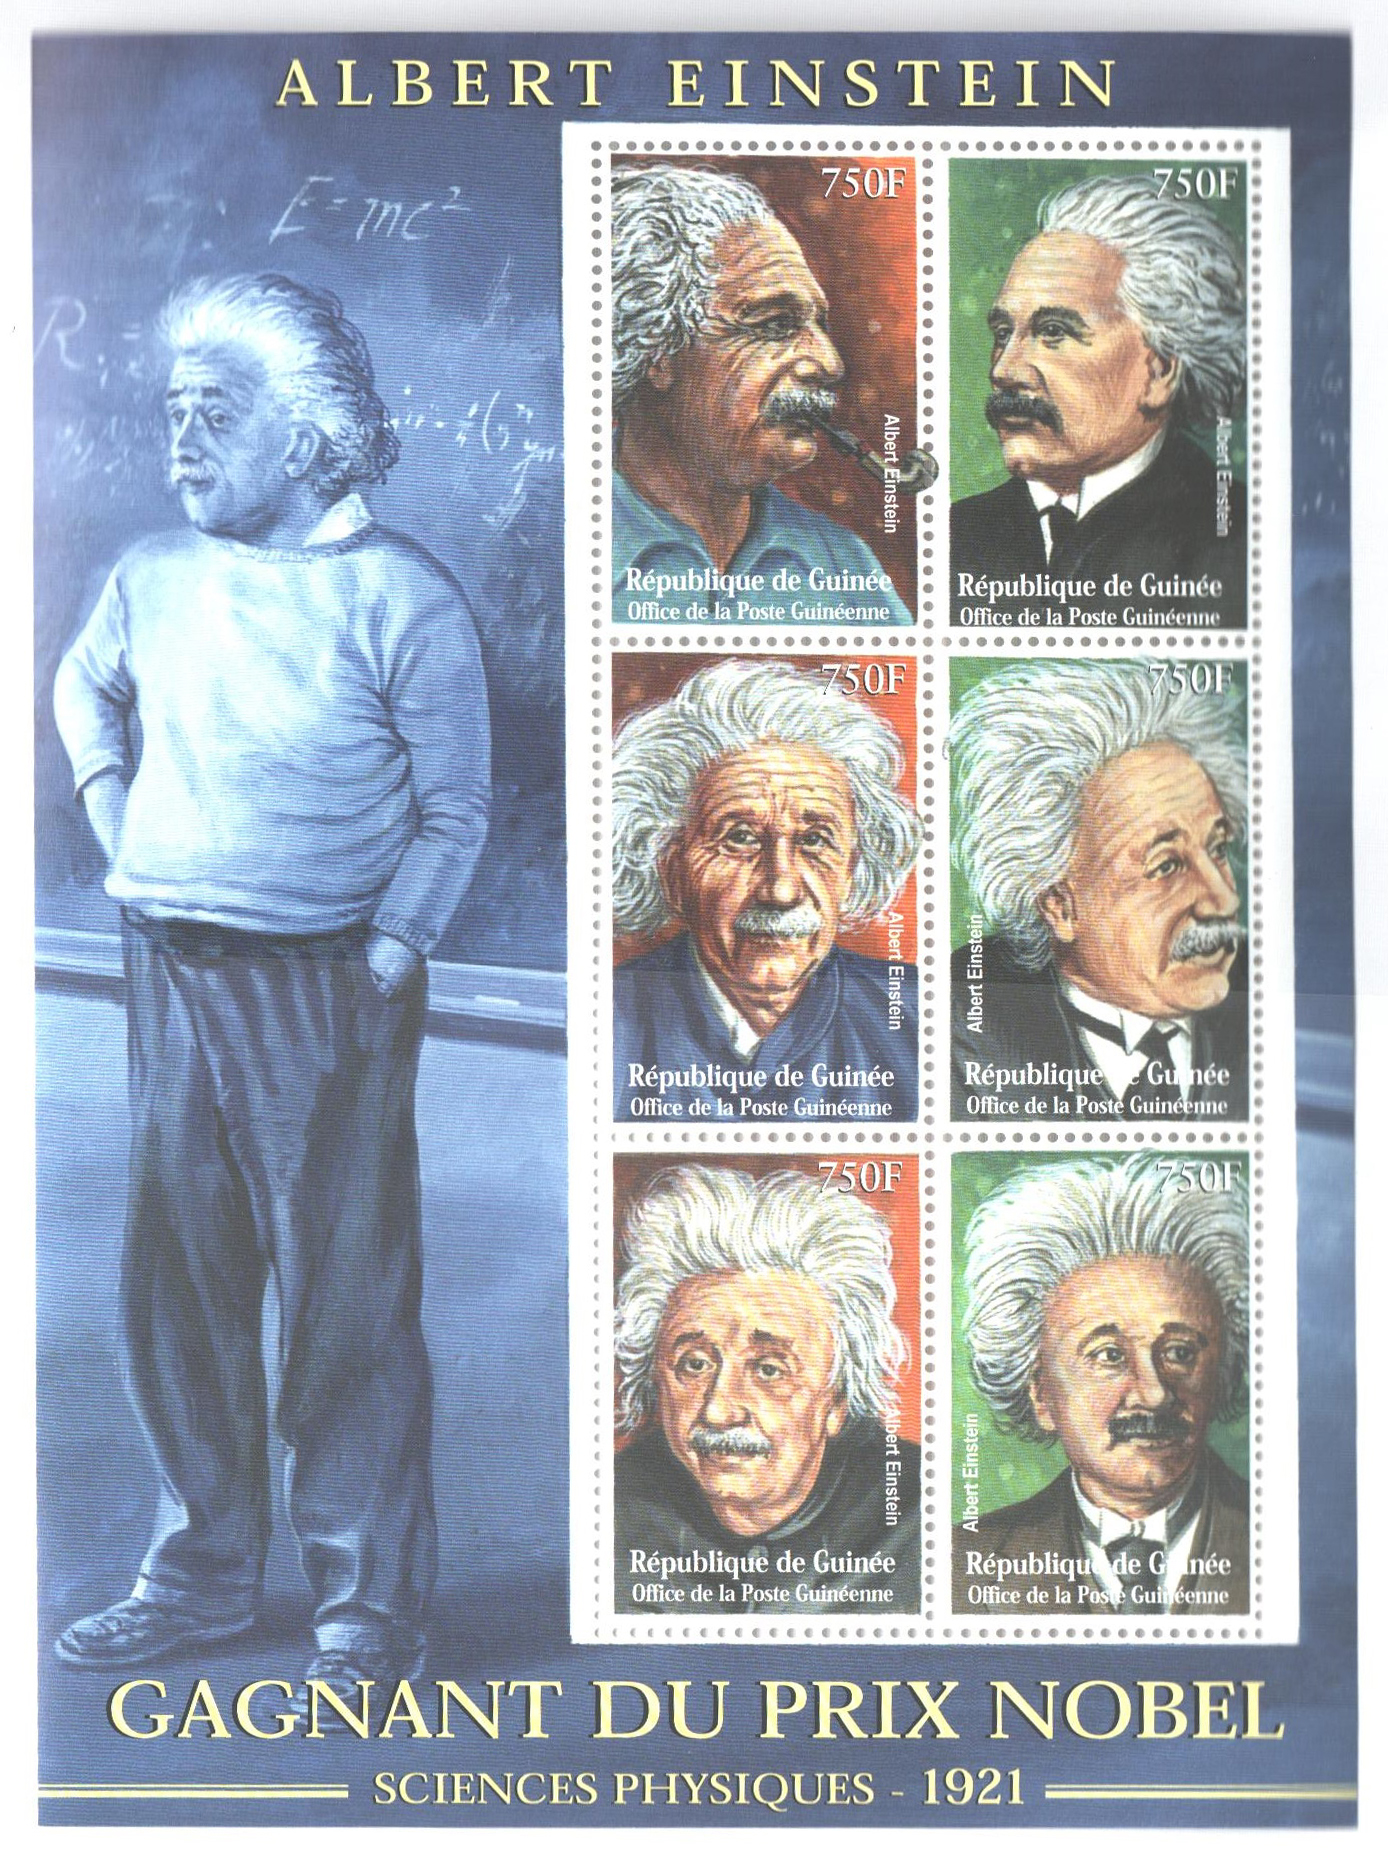 Эйнштейн нобелевская премия по физике